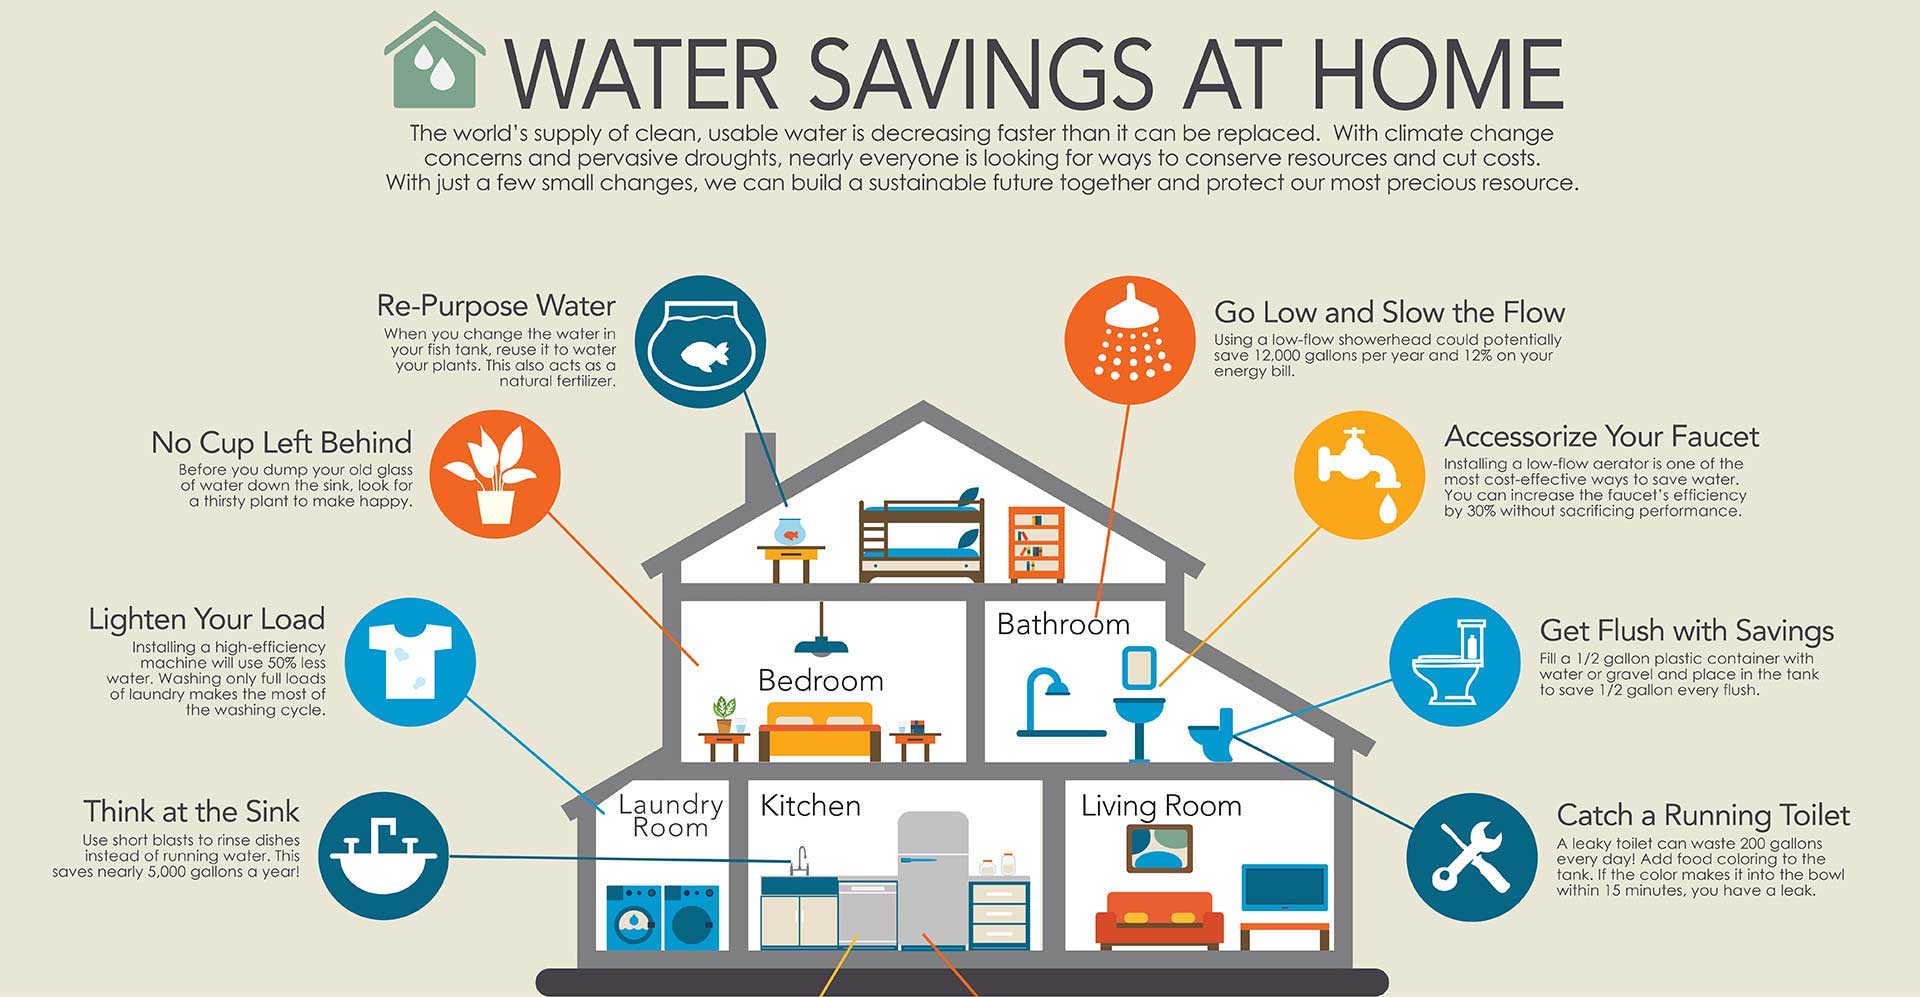 Saving water at home.